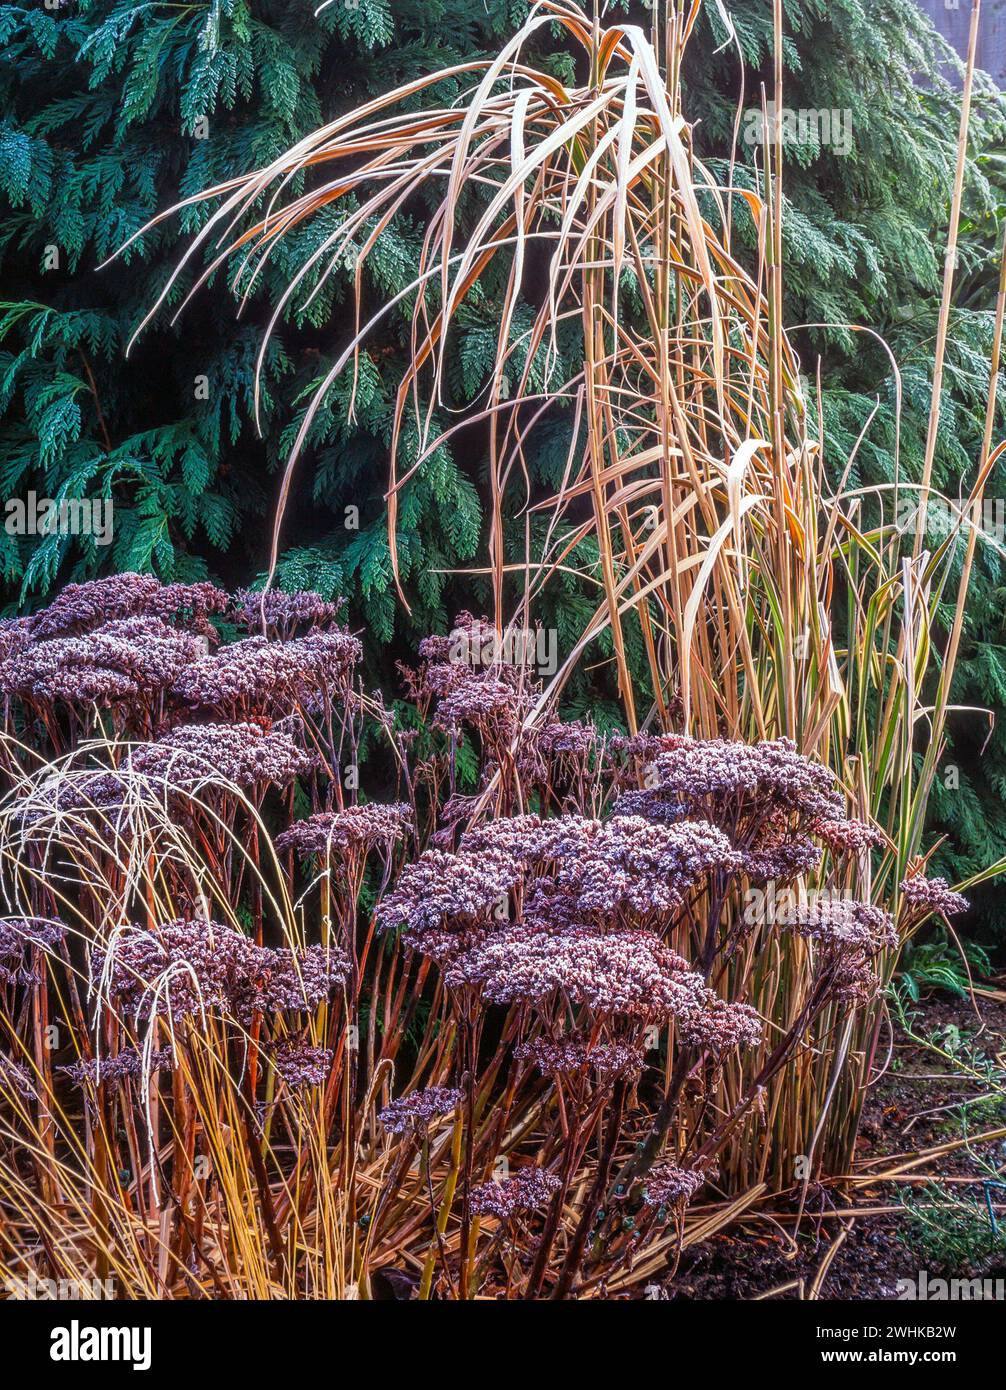 Wintergarten Laub von Sedum Spectabile „Autumn Joy“ und Miscanthus sinesis variegatus (japanisches Silbergras) mit Raureif, England, Vereinigtes Königreich Stockfoto